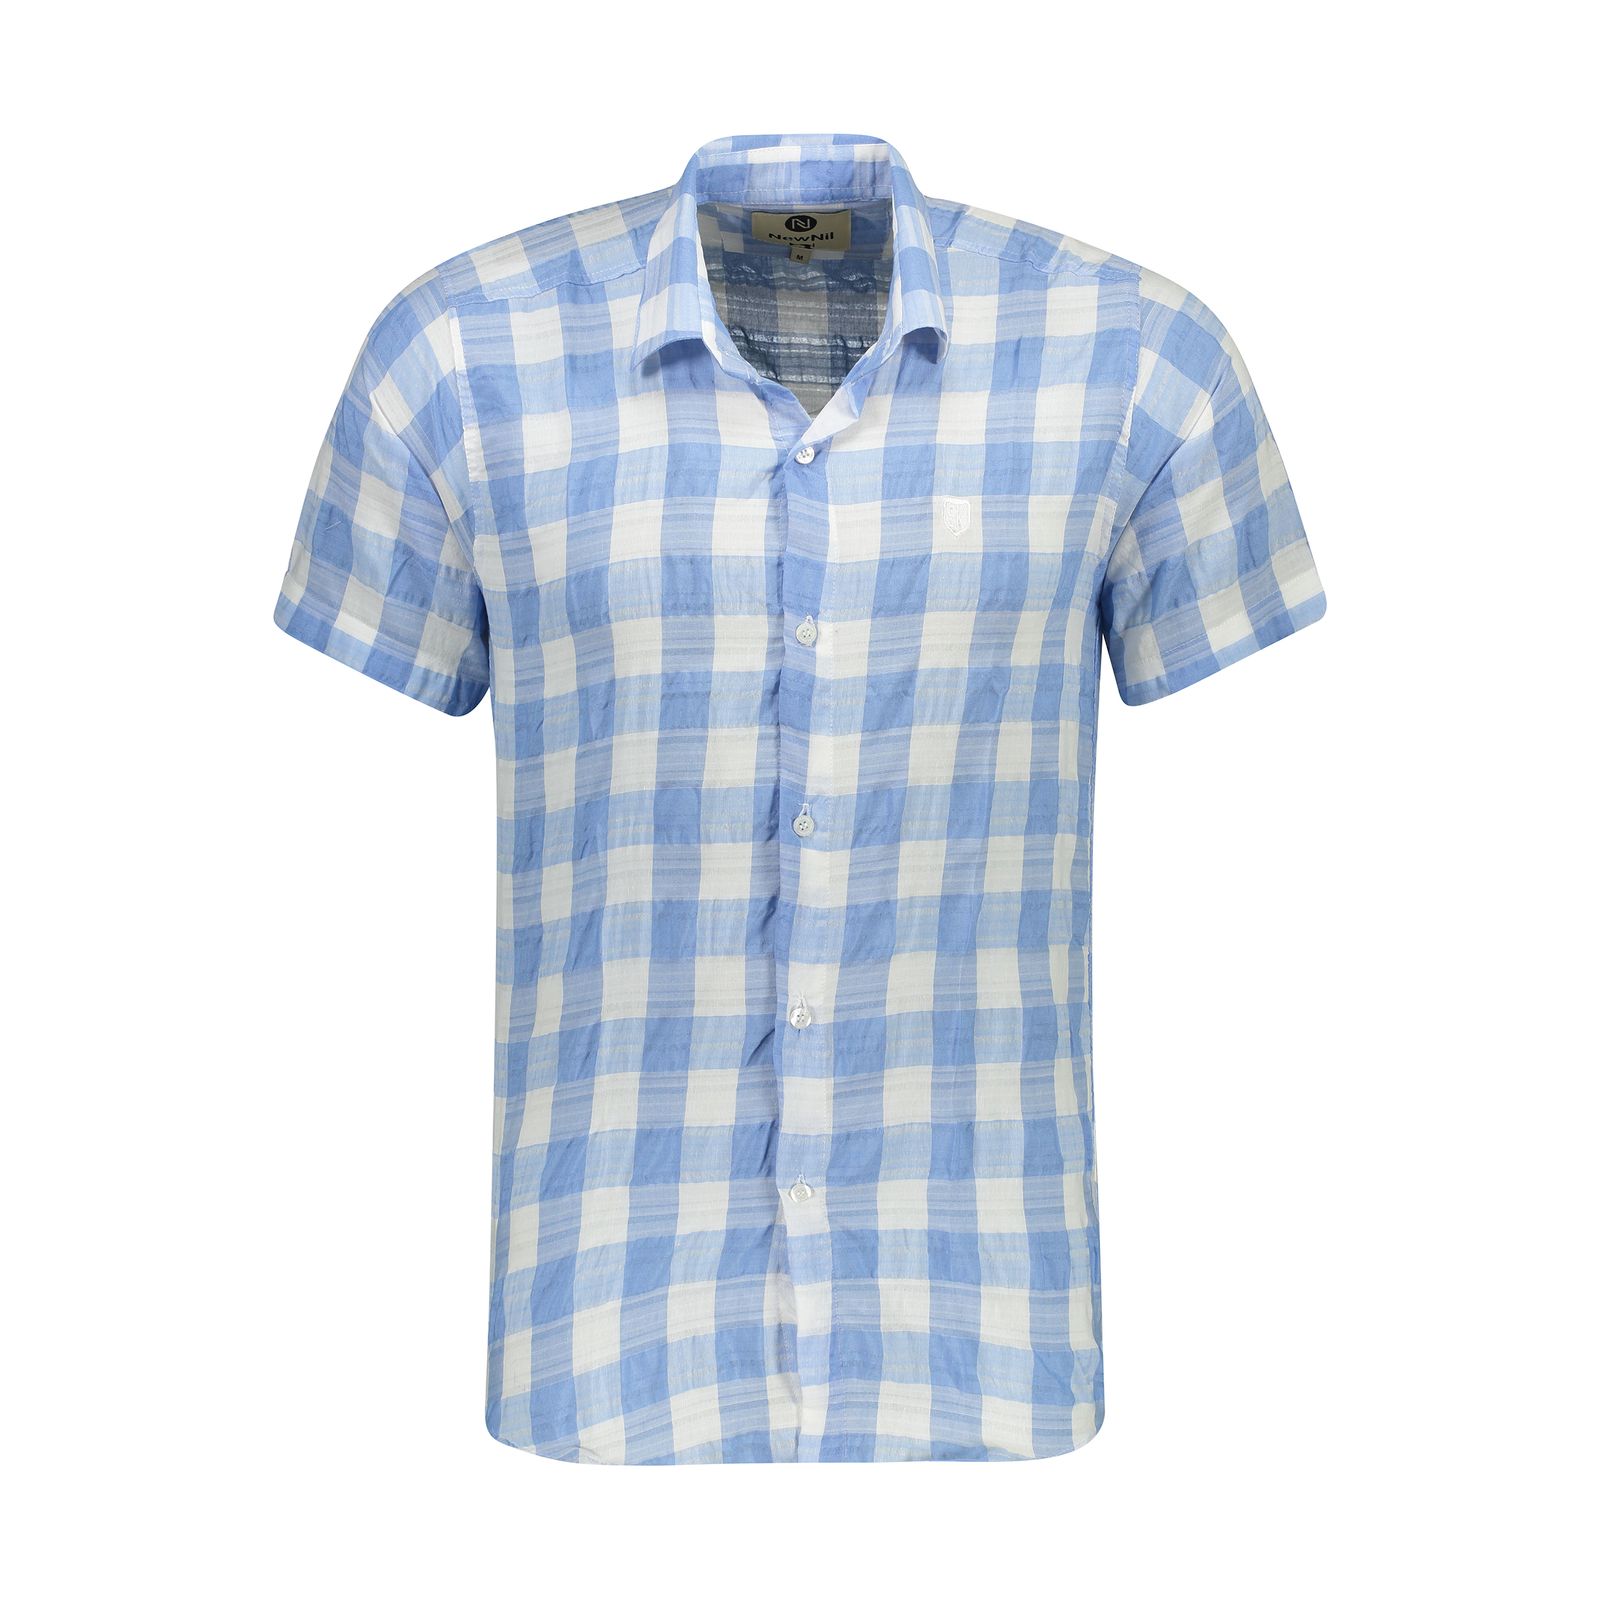 پیراهن آستین کوتاه مردانه نیو نیل مدل PM101-BlueandWhite -  - 1